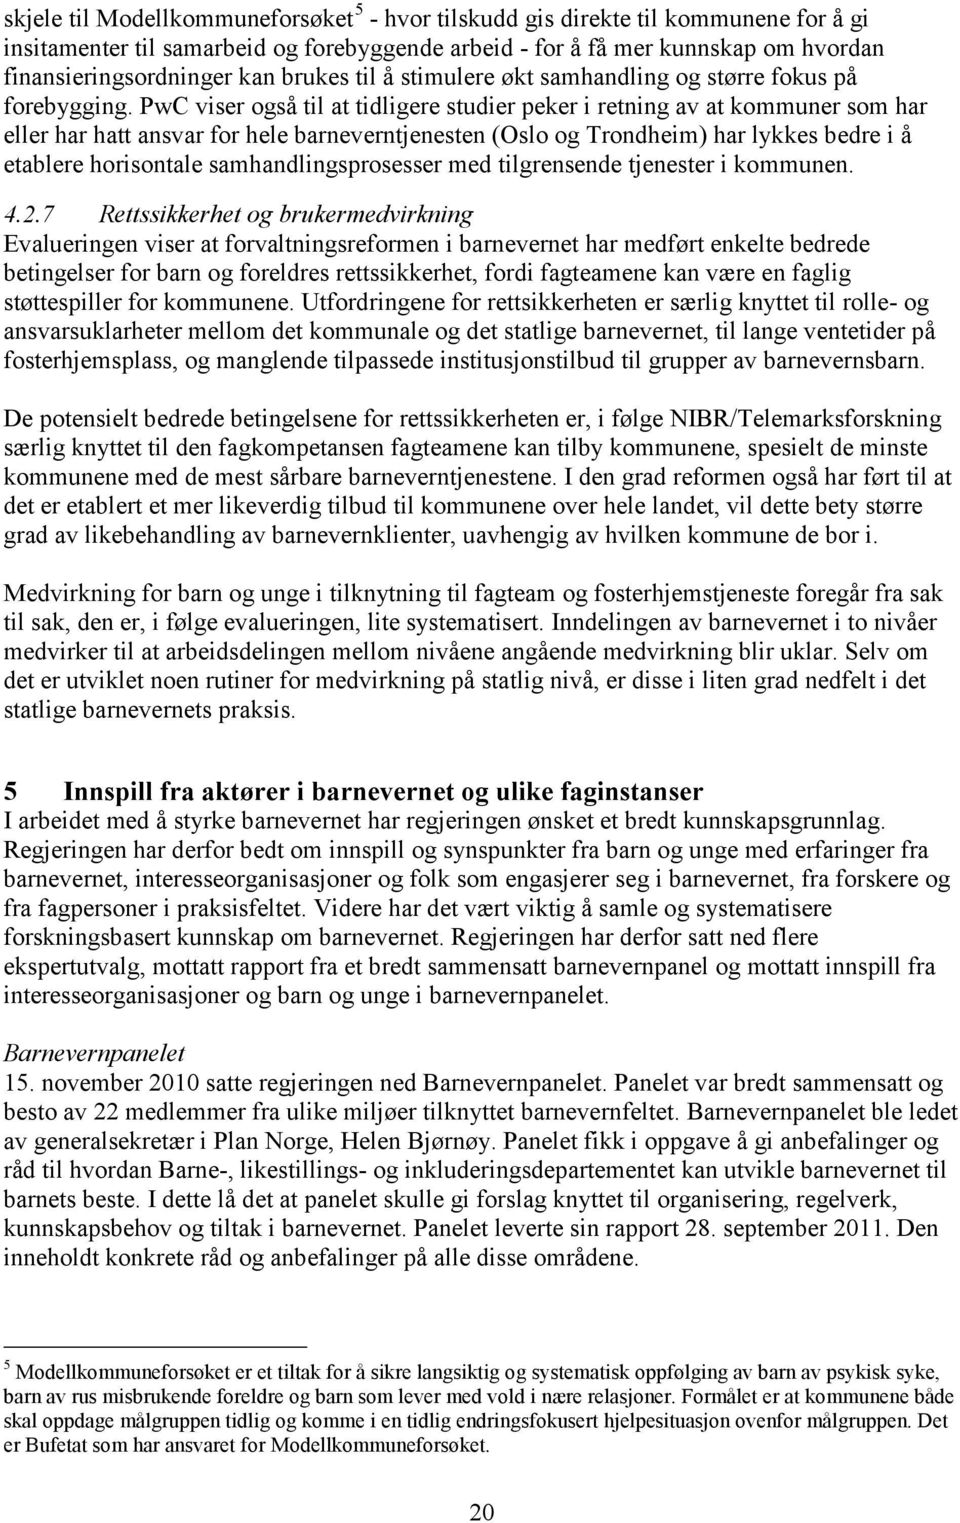 PwC viser også til at tidligere studier peker i retning av at kommuner som har eller har hatt ansvar for hele barneverntjenesten (Oslo og Trondheim) har lykkes bedre i å etablere horisontale